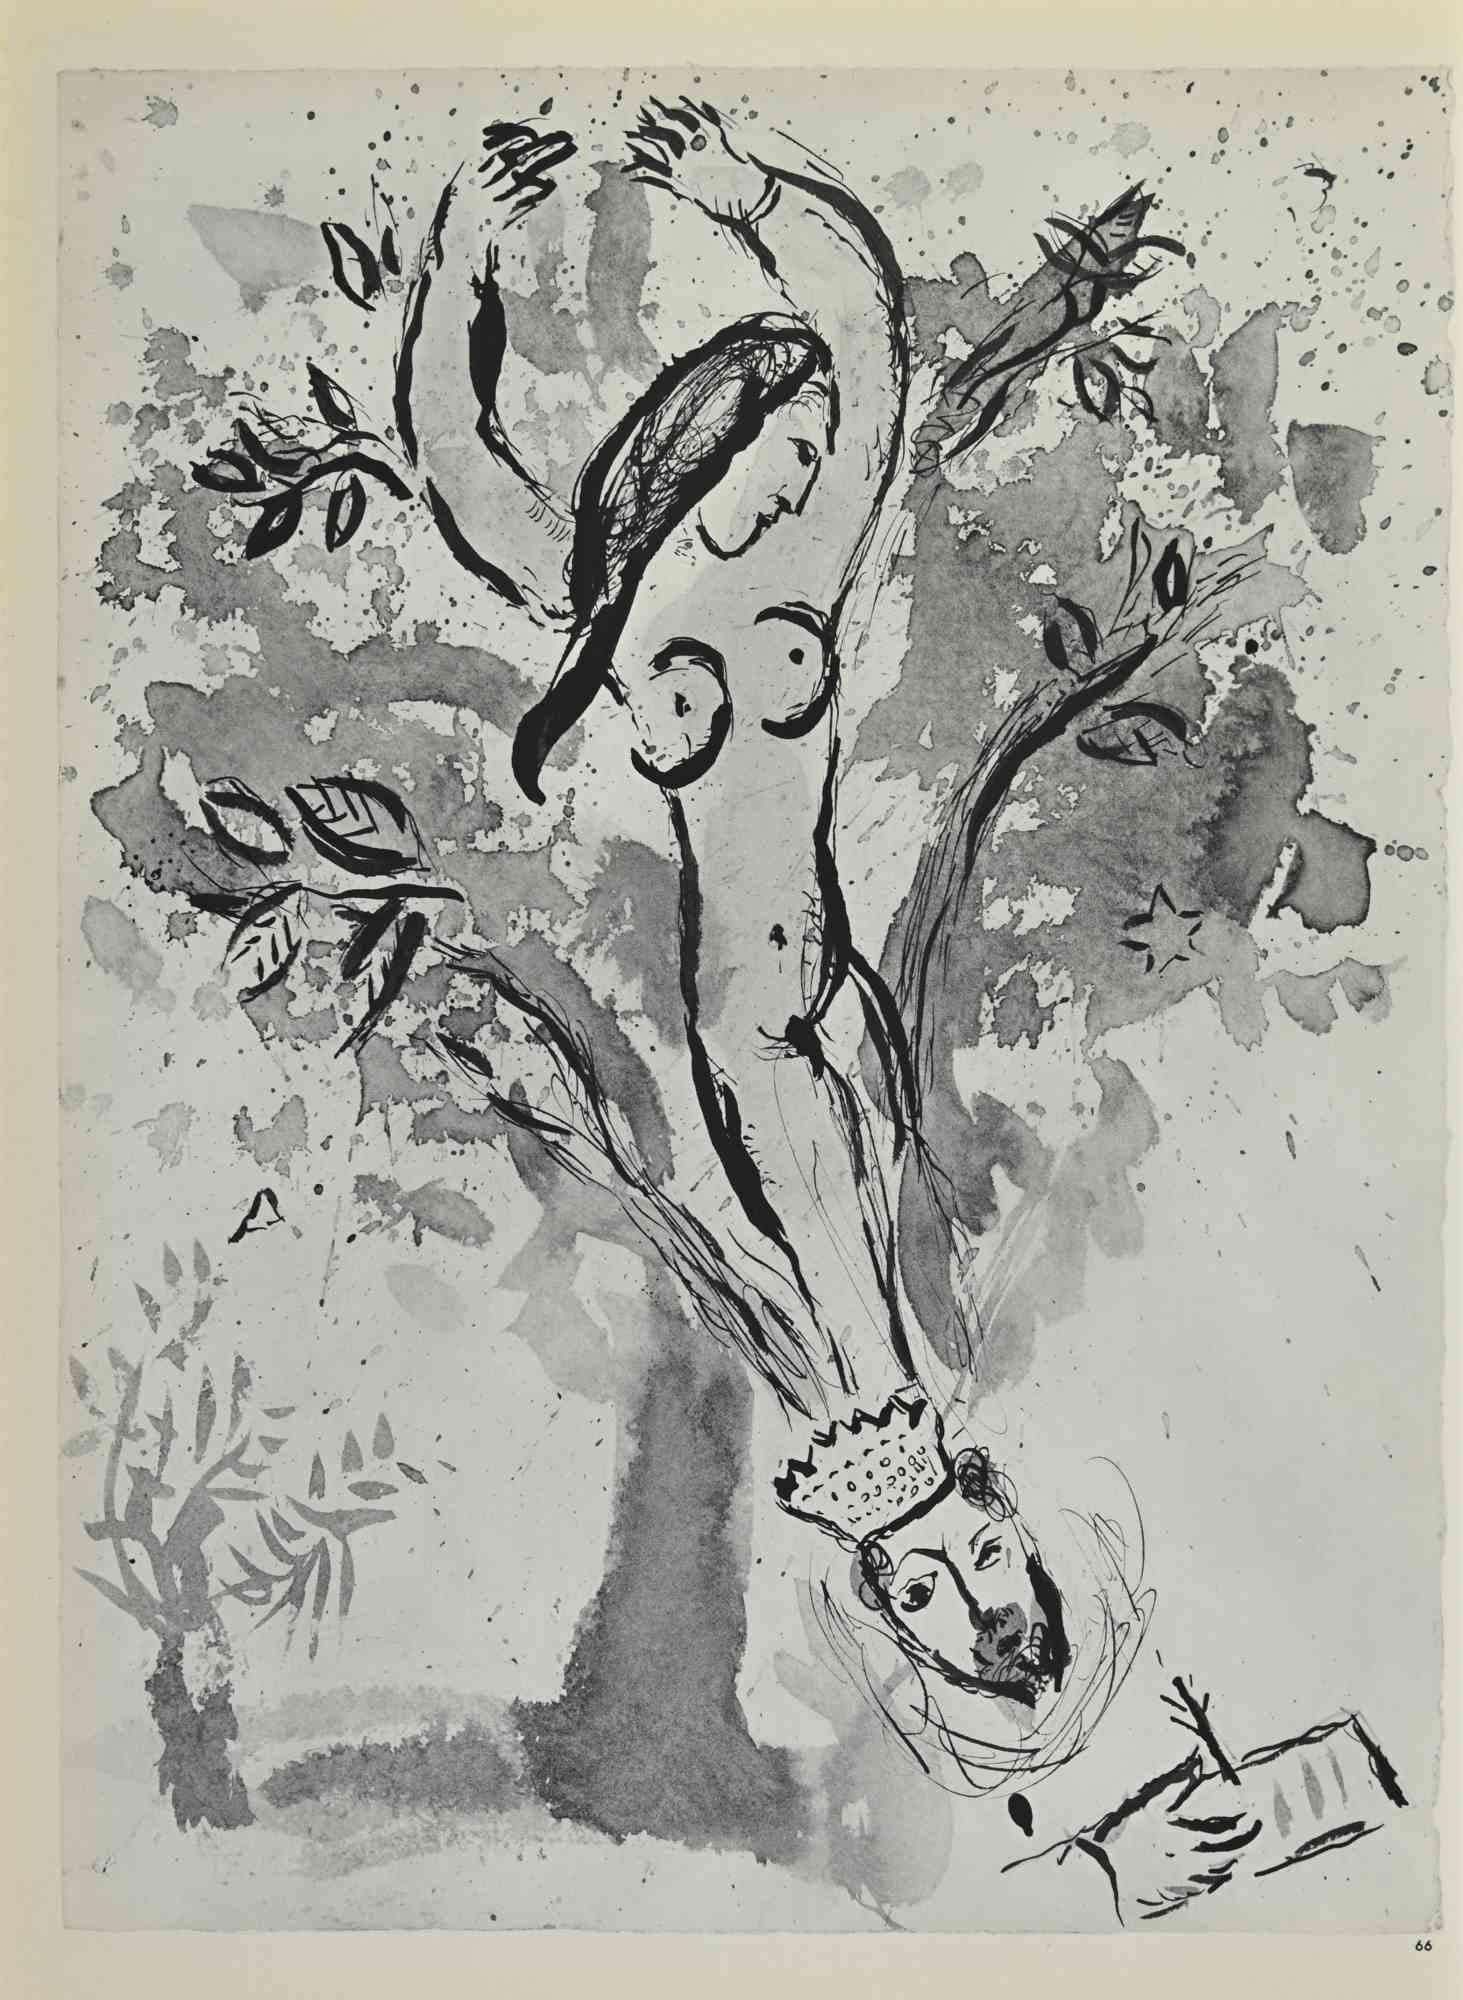 Conclusion de l'ecclésiaste ist ein Kunstwerk von March Chagall aus den 1960er Jahren.

Lithographie auf braun getöntem Papier, ohne Signatur.

Lithographie auf beiden Blättern.

Auflage von 6500 unsignierten Lithografien. Gedruckt von Mourlot und